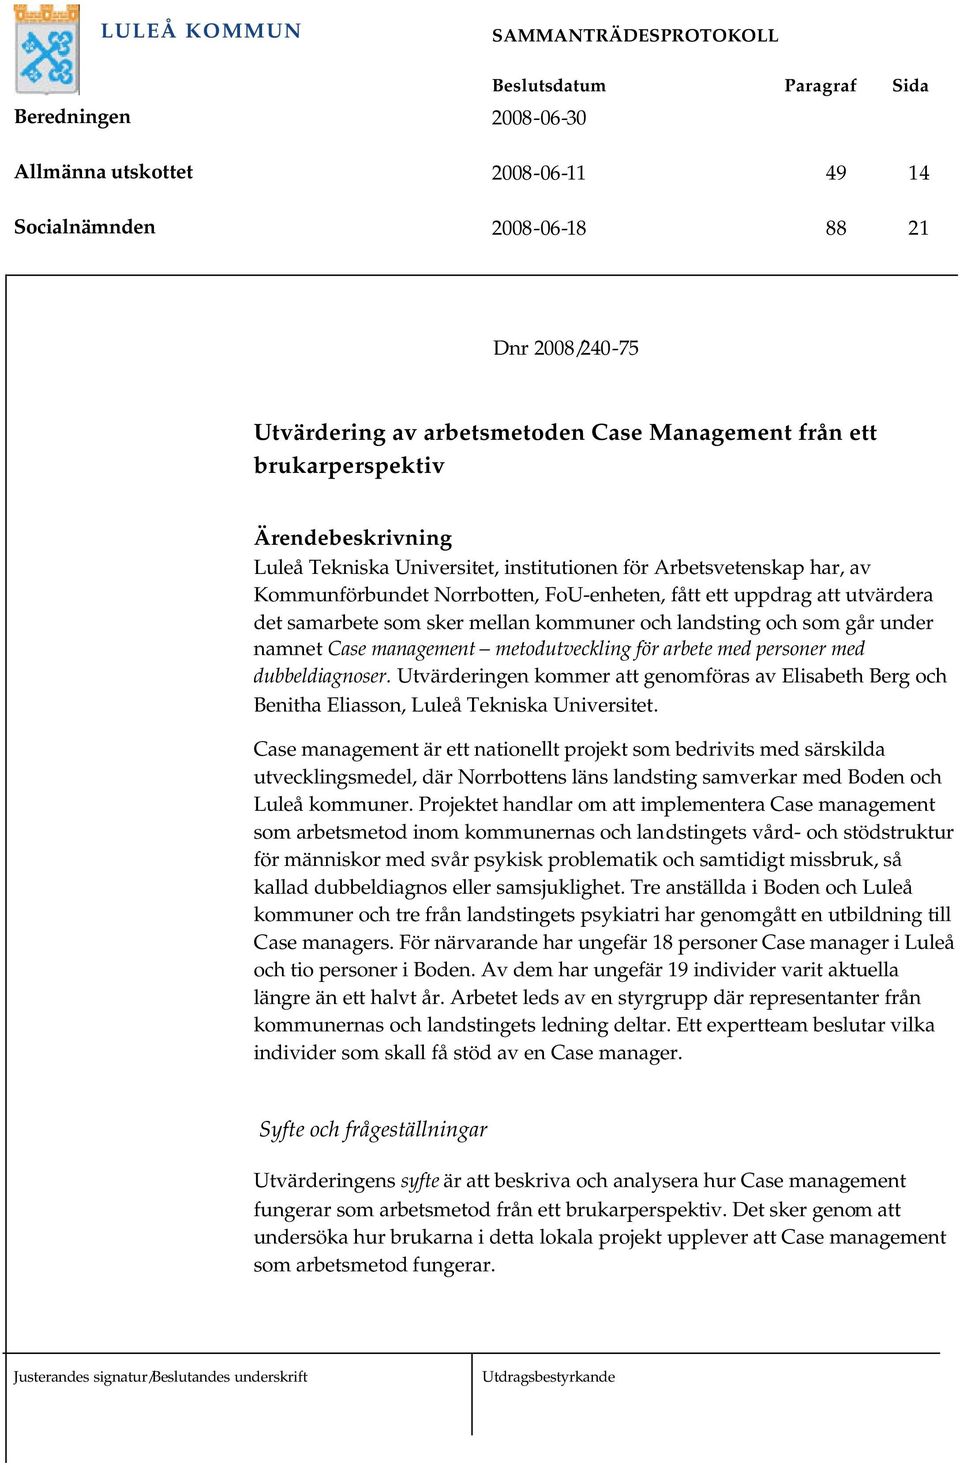 management metodutveckling för arbete med personer med dubbeldiagnoser. Utvärderingen kommer att genomföras av Elisabeth Berg och Benitha Eliasson, Luleå Tekniska Universitet.